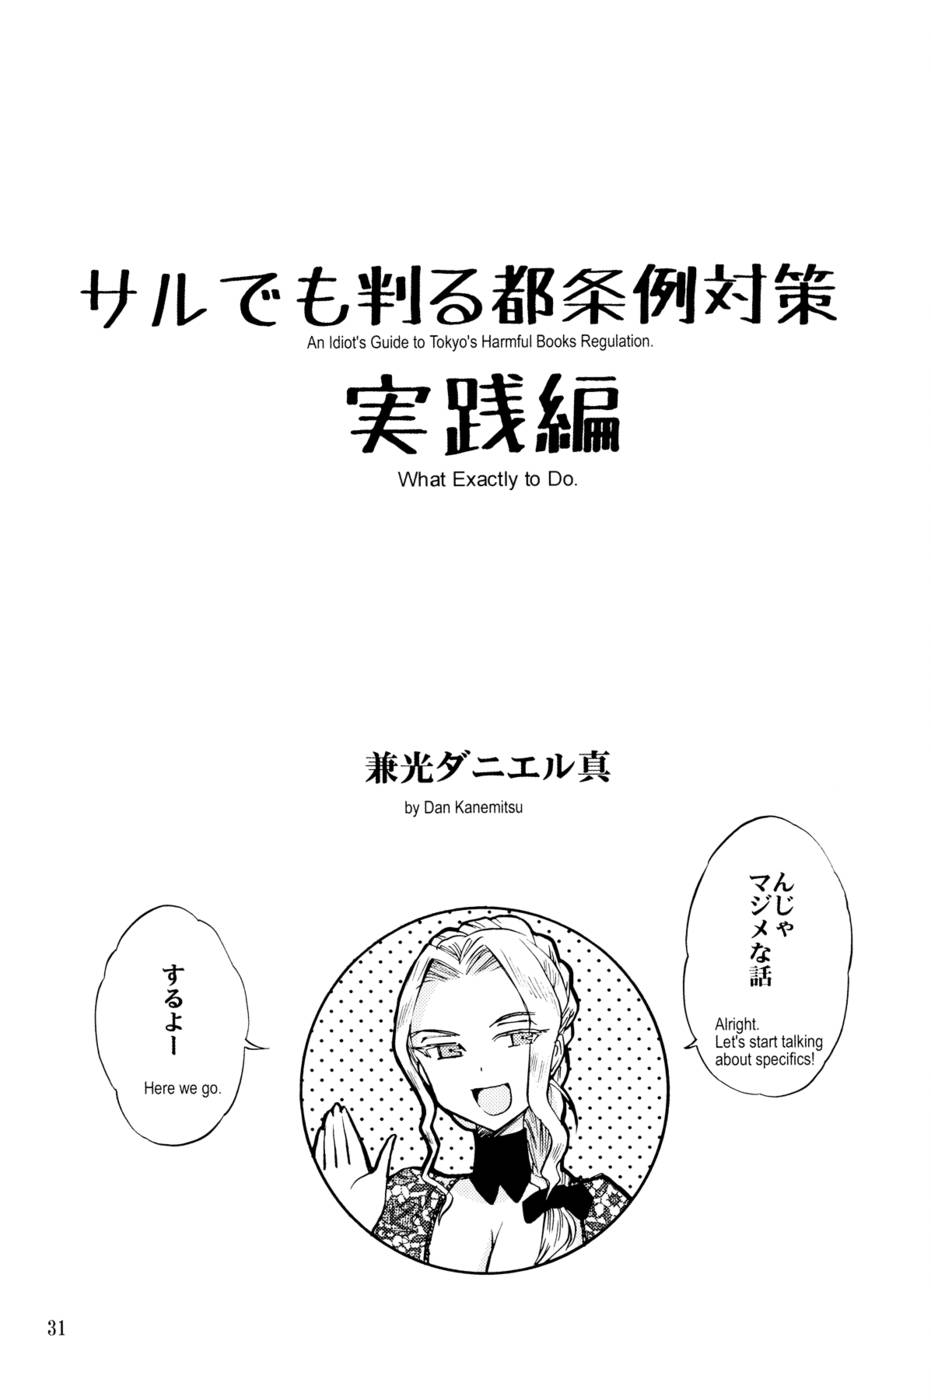 モンキービジネス-東京の有害な本の規制に関する馬鹿げたガイド